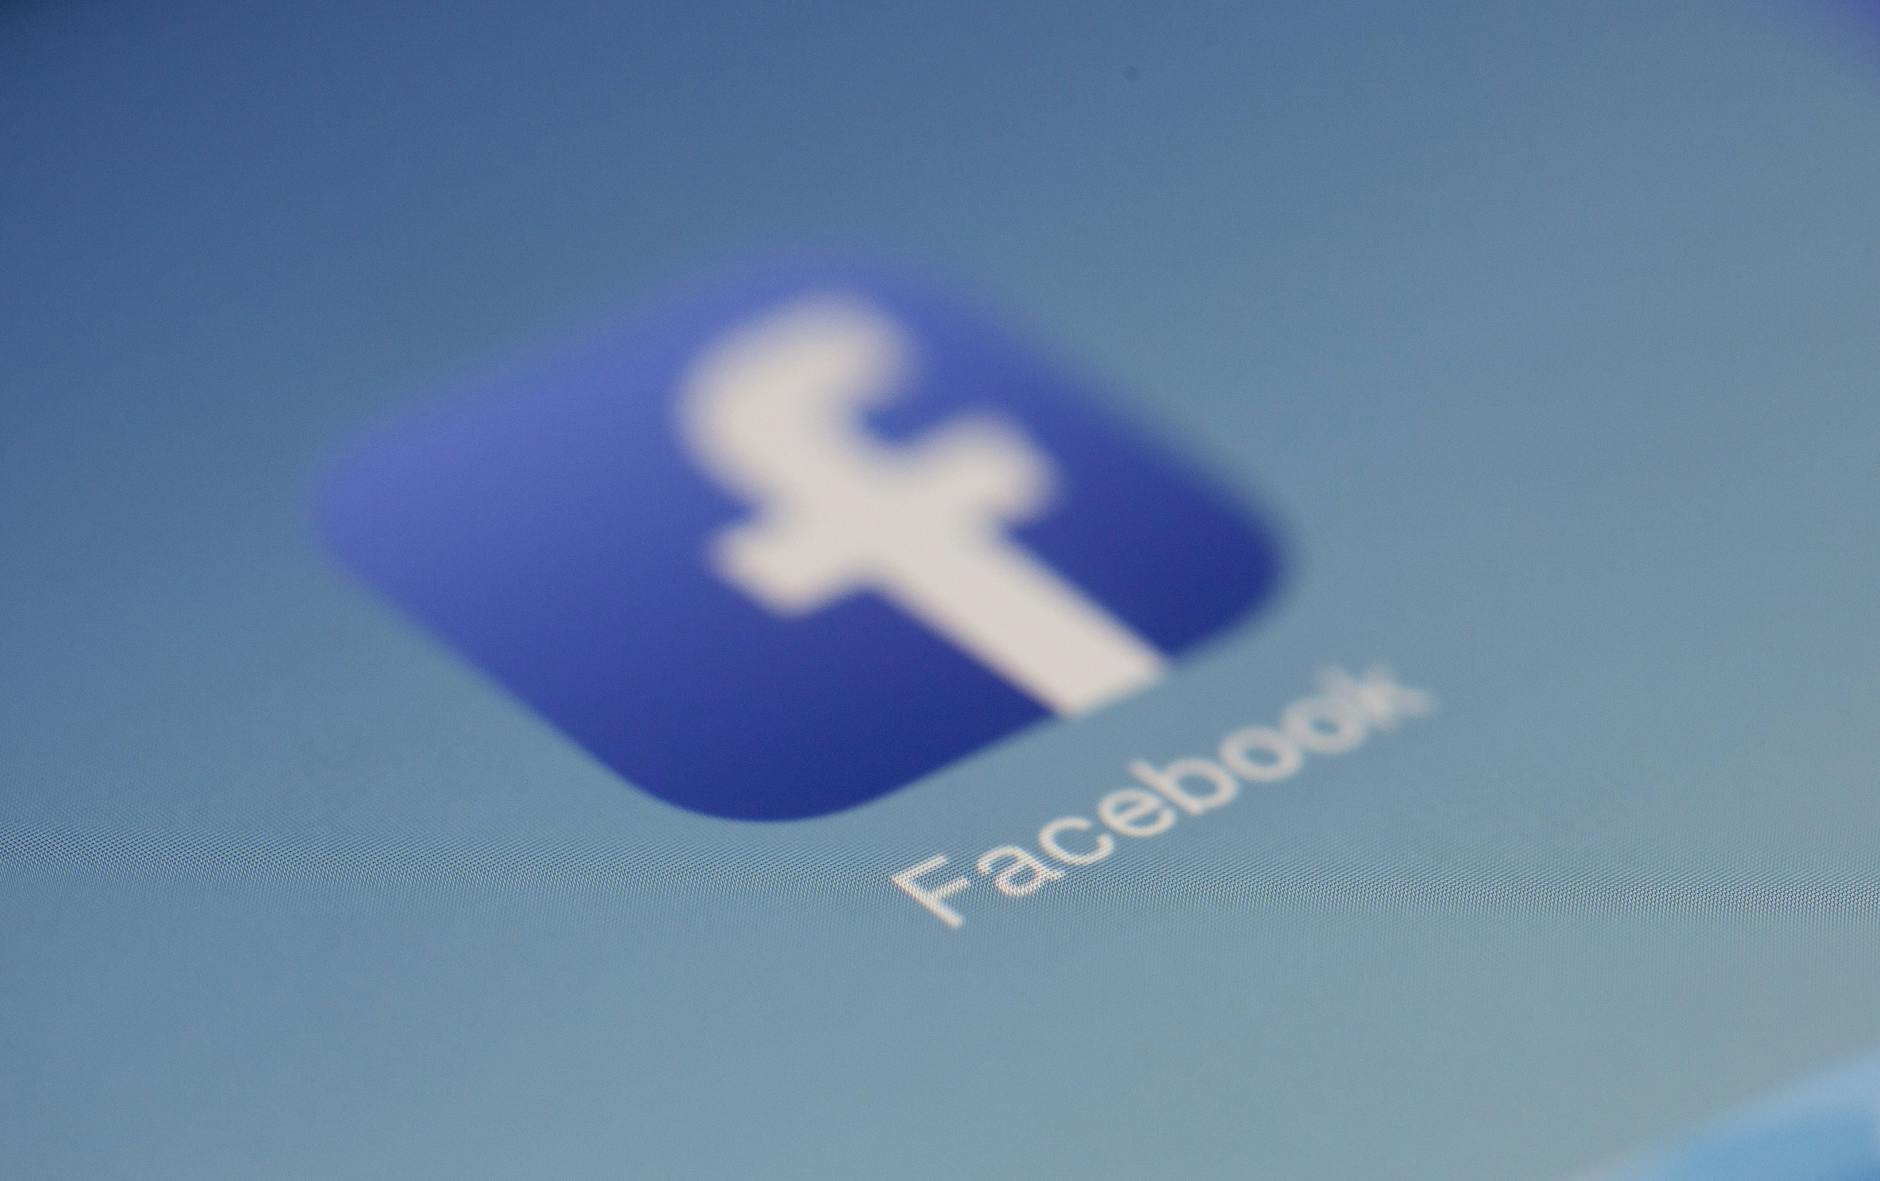 עובדי פייסבוק זוכים לטיפול פסיכולוגי - אך ללא חיס 1